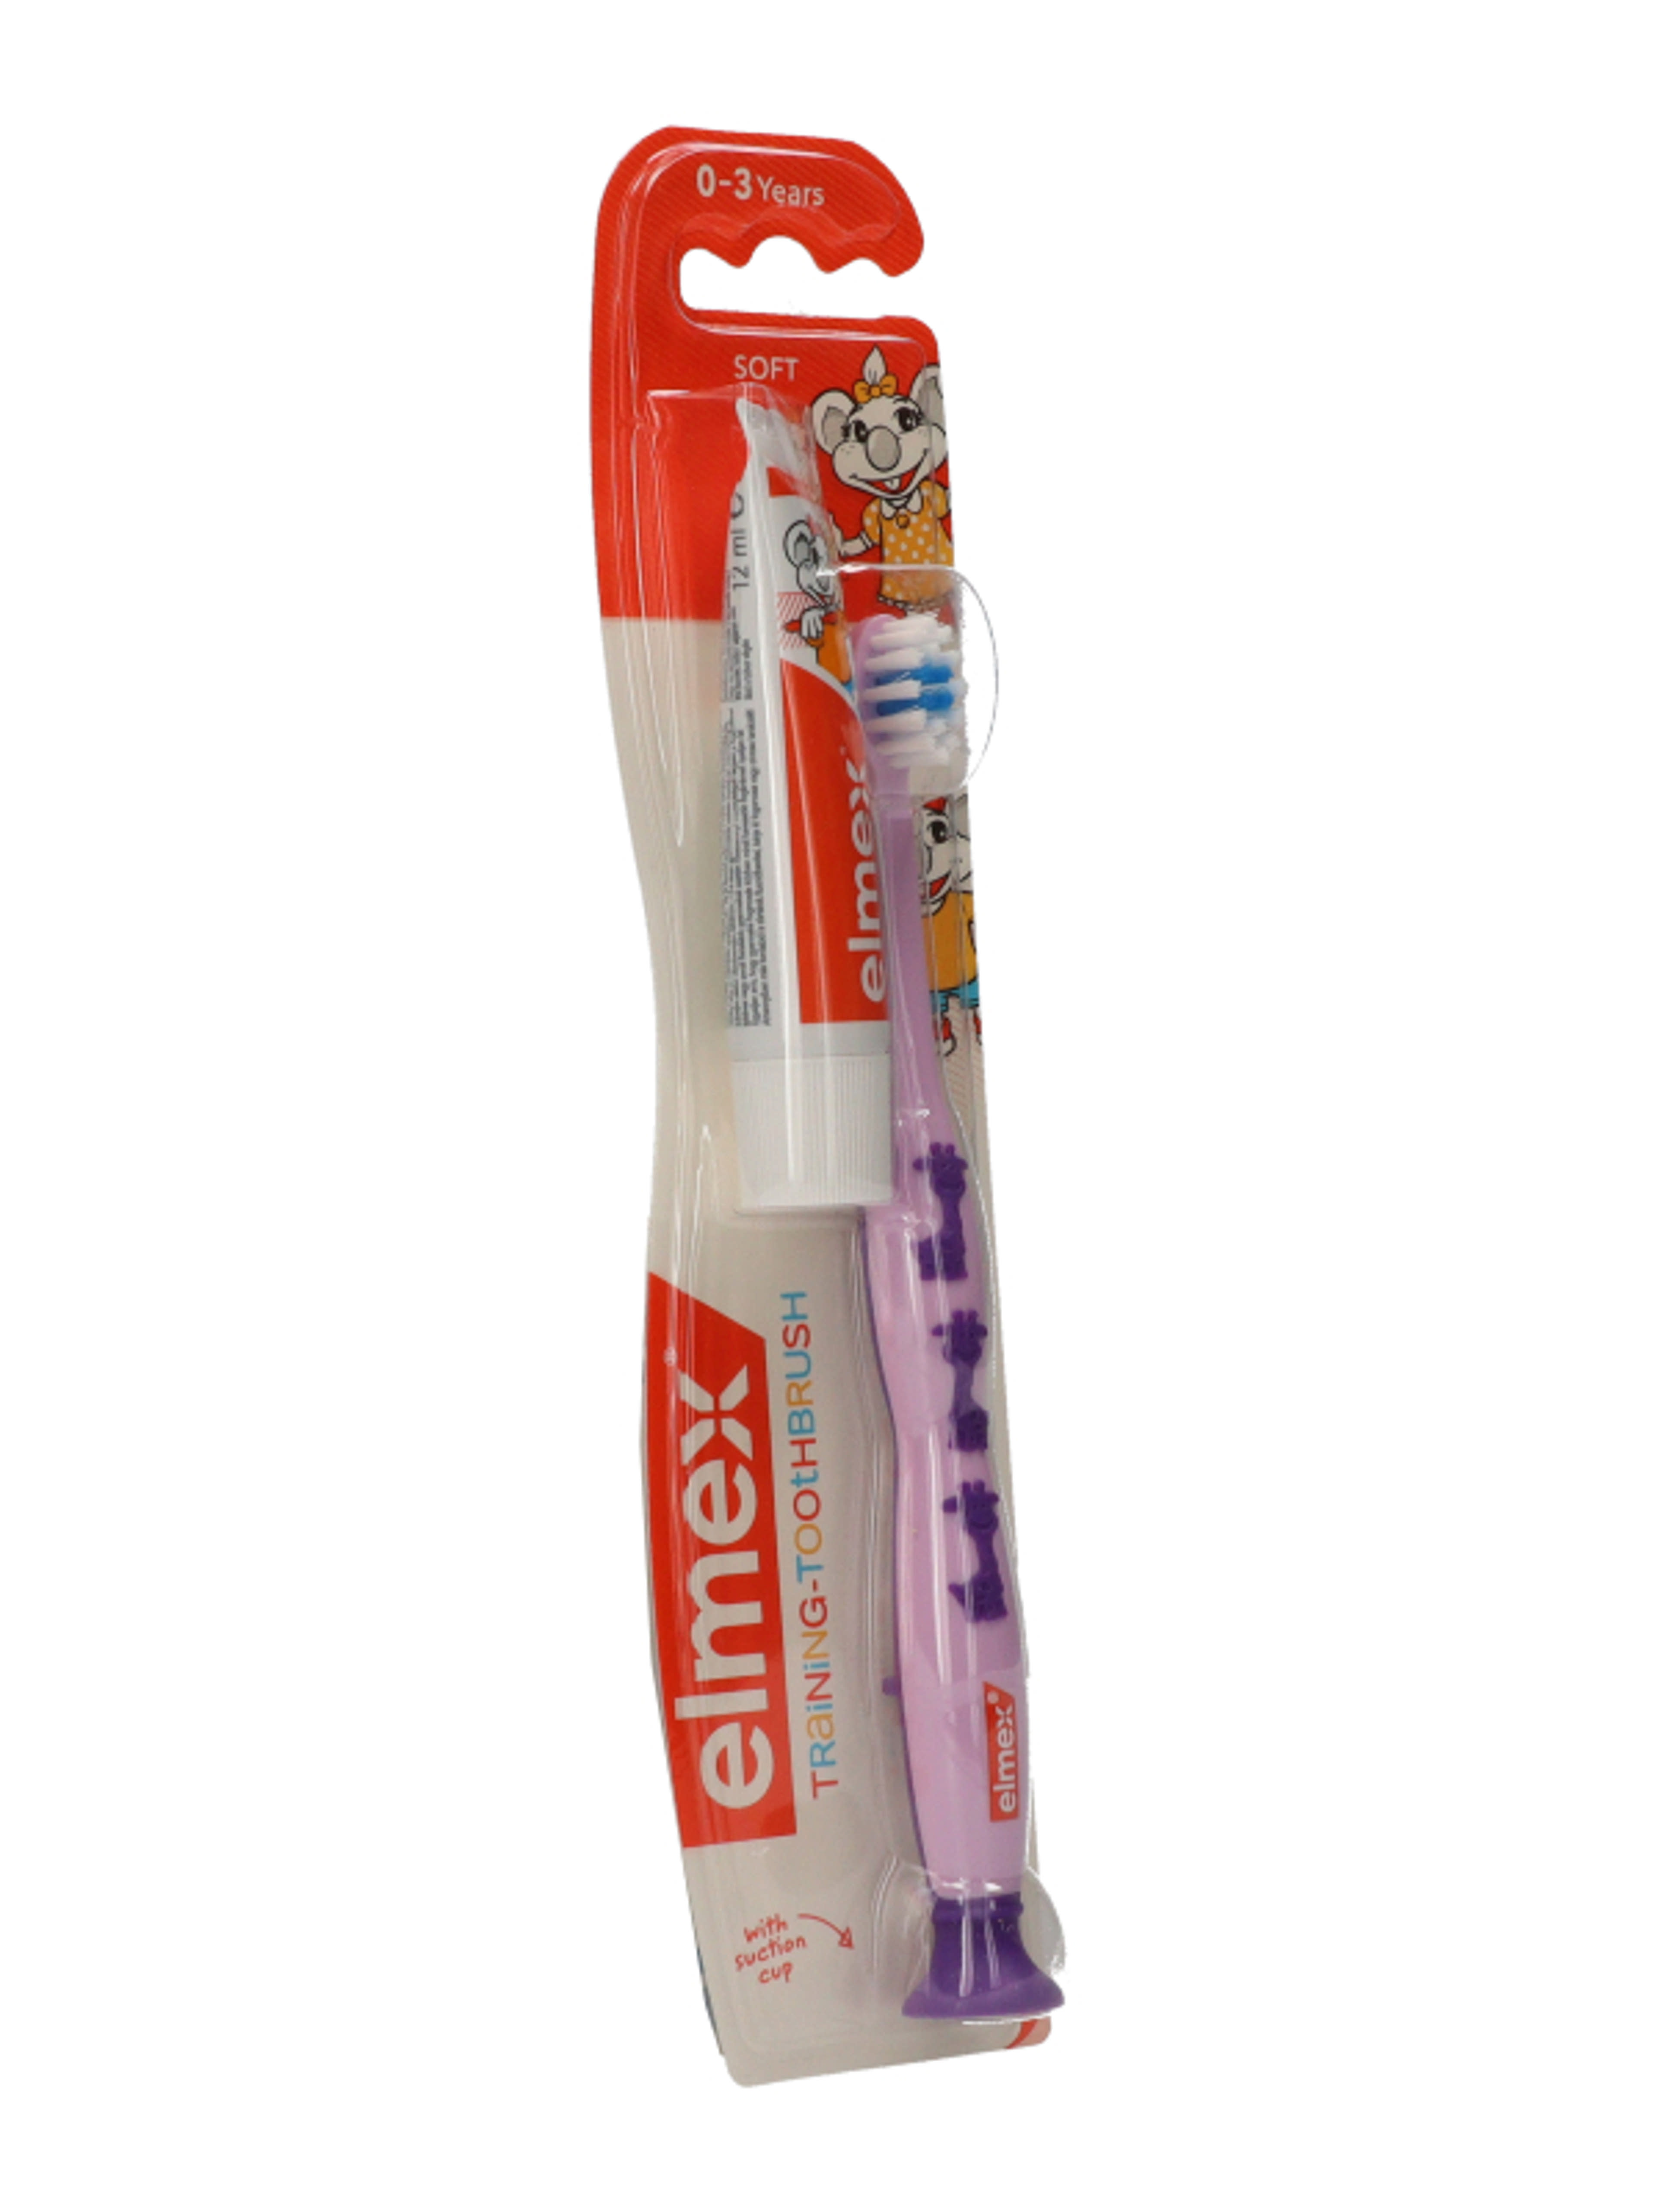 Elmex fogkefe és fogkrém 0-3 éves kor között - 1 db-4